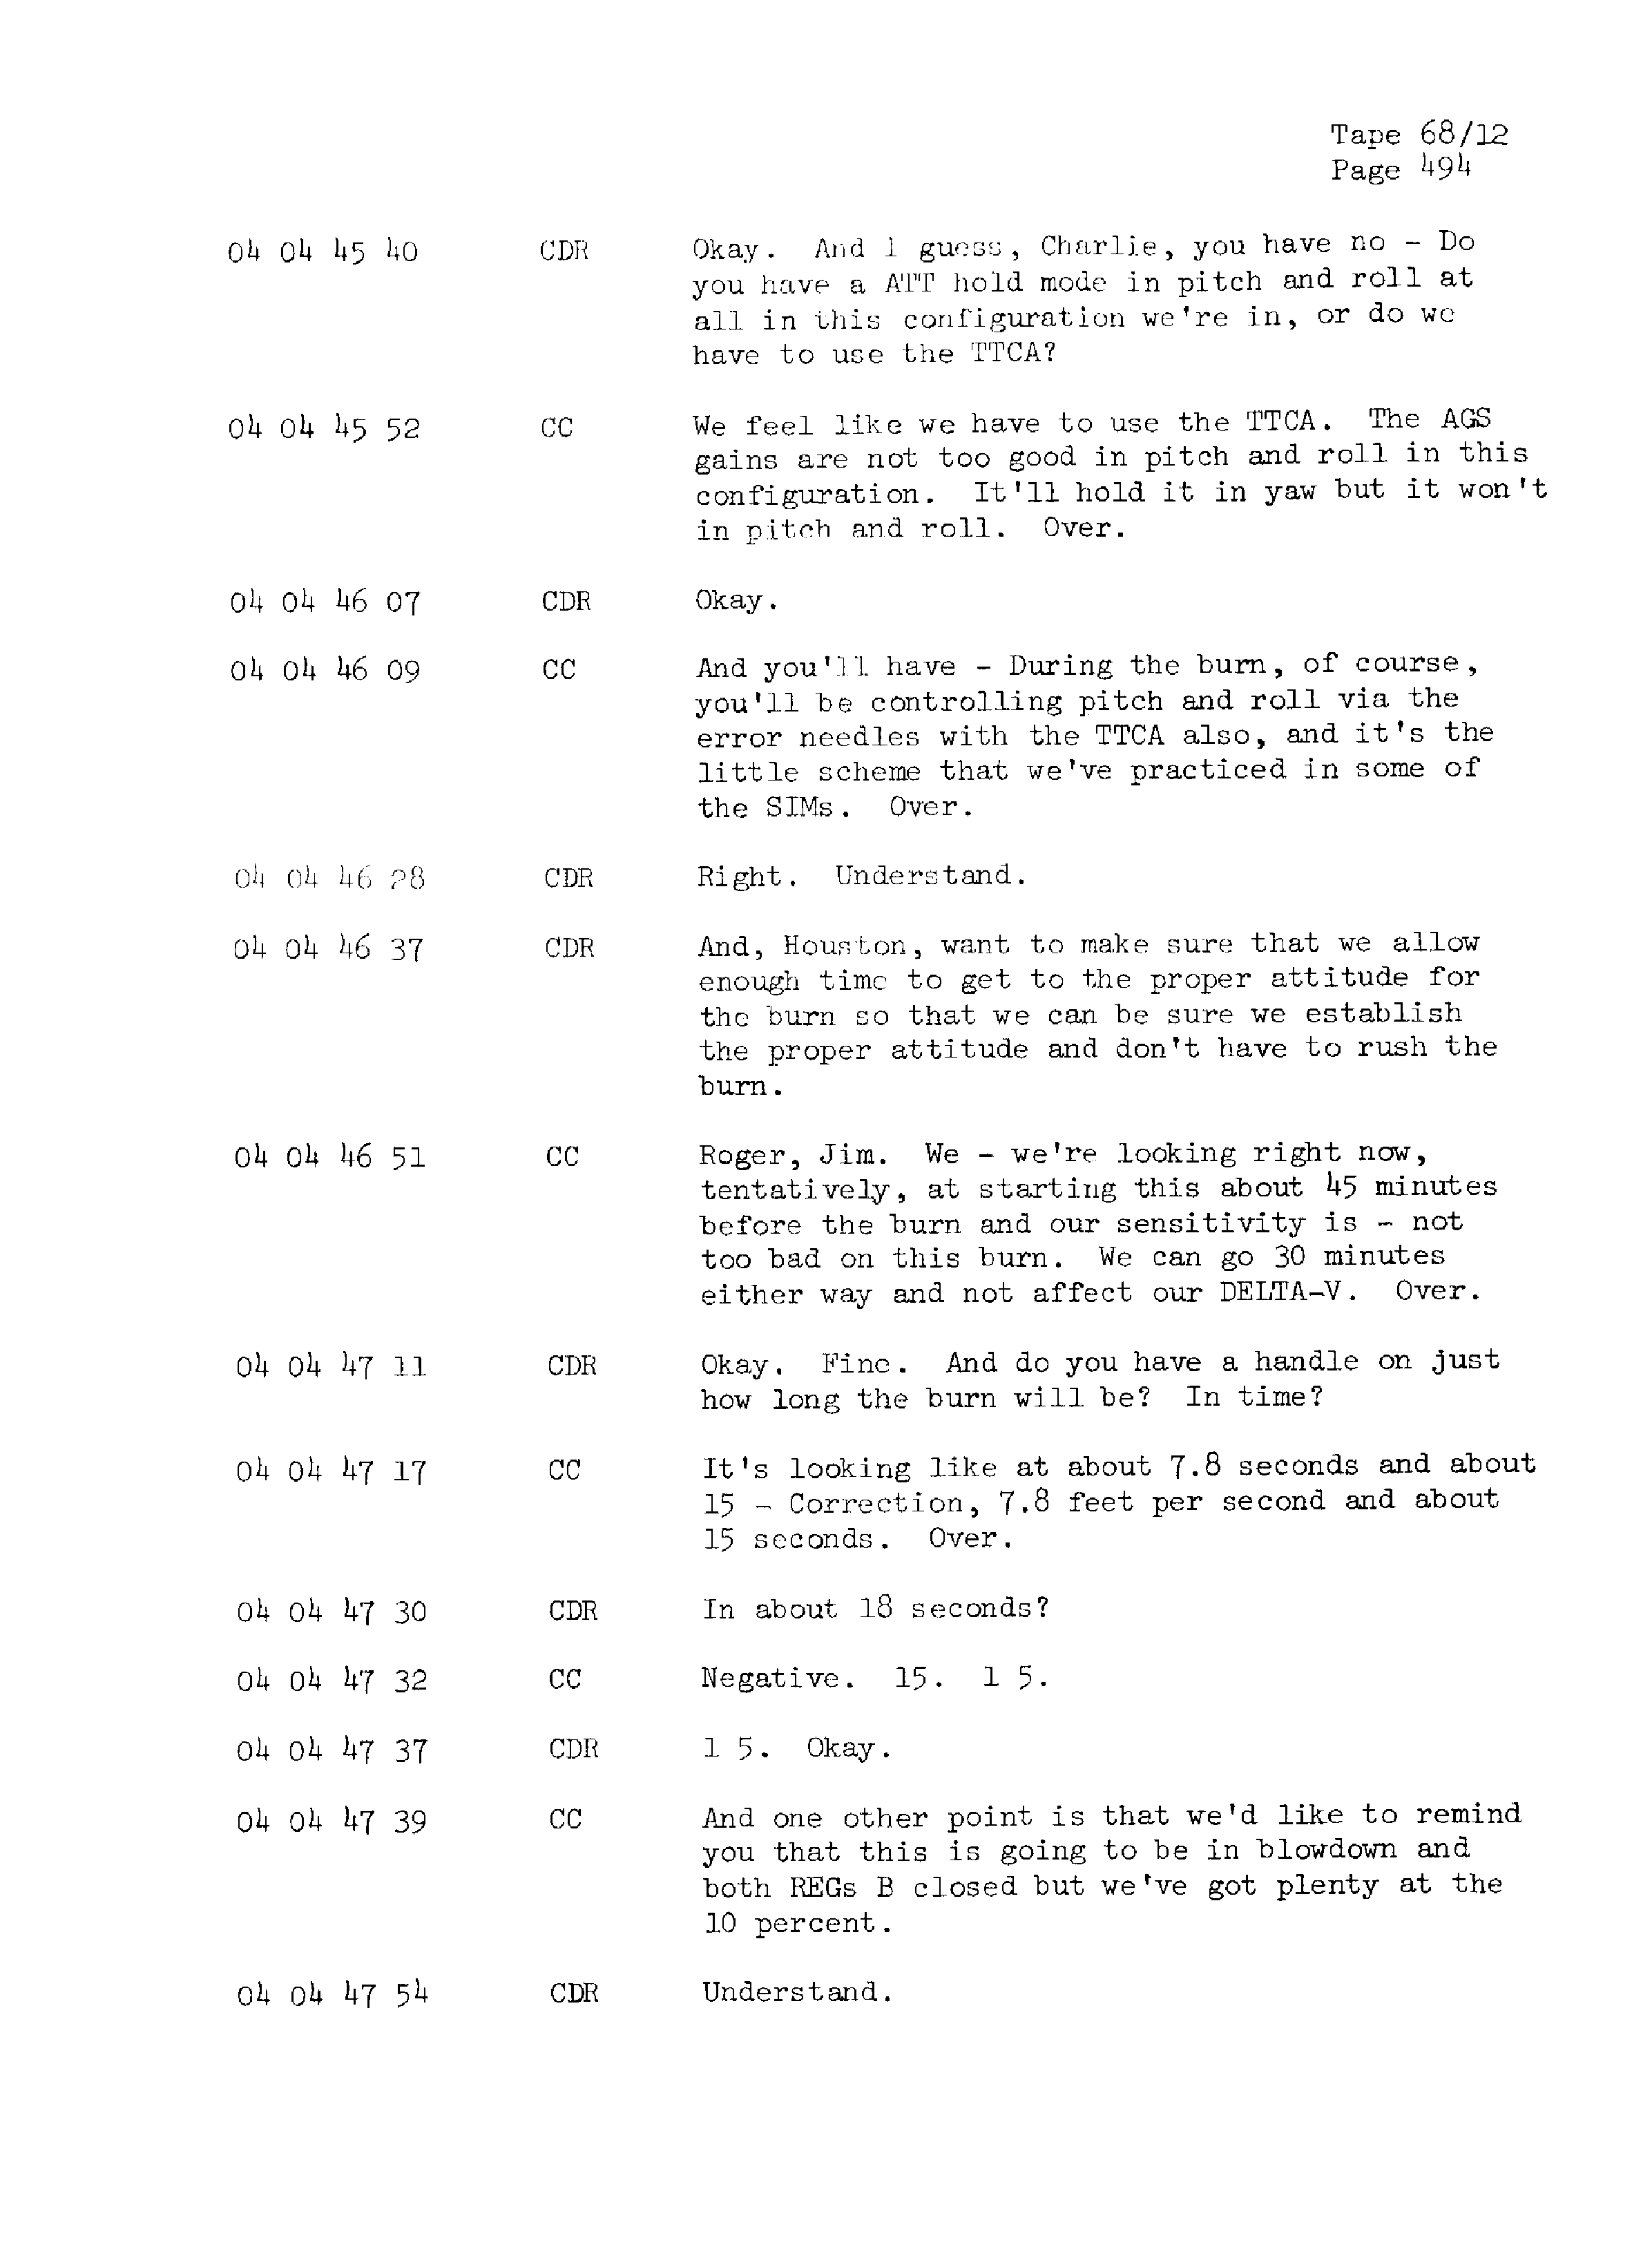 Page 501 of Apollo 13’s original transcript